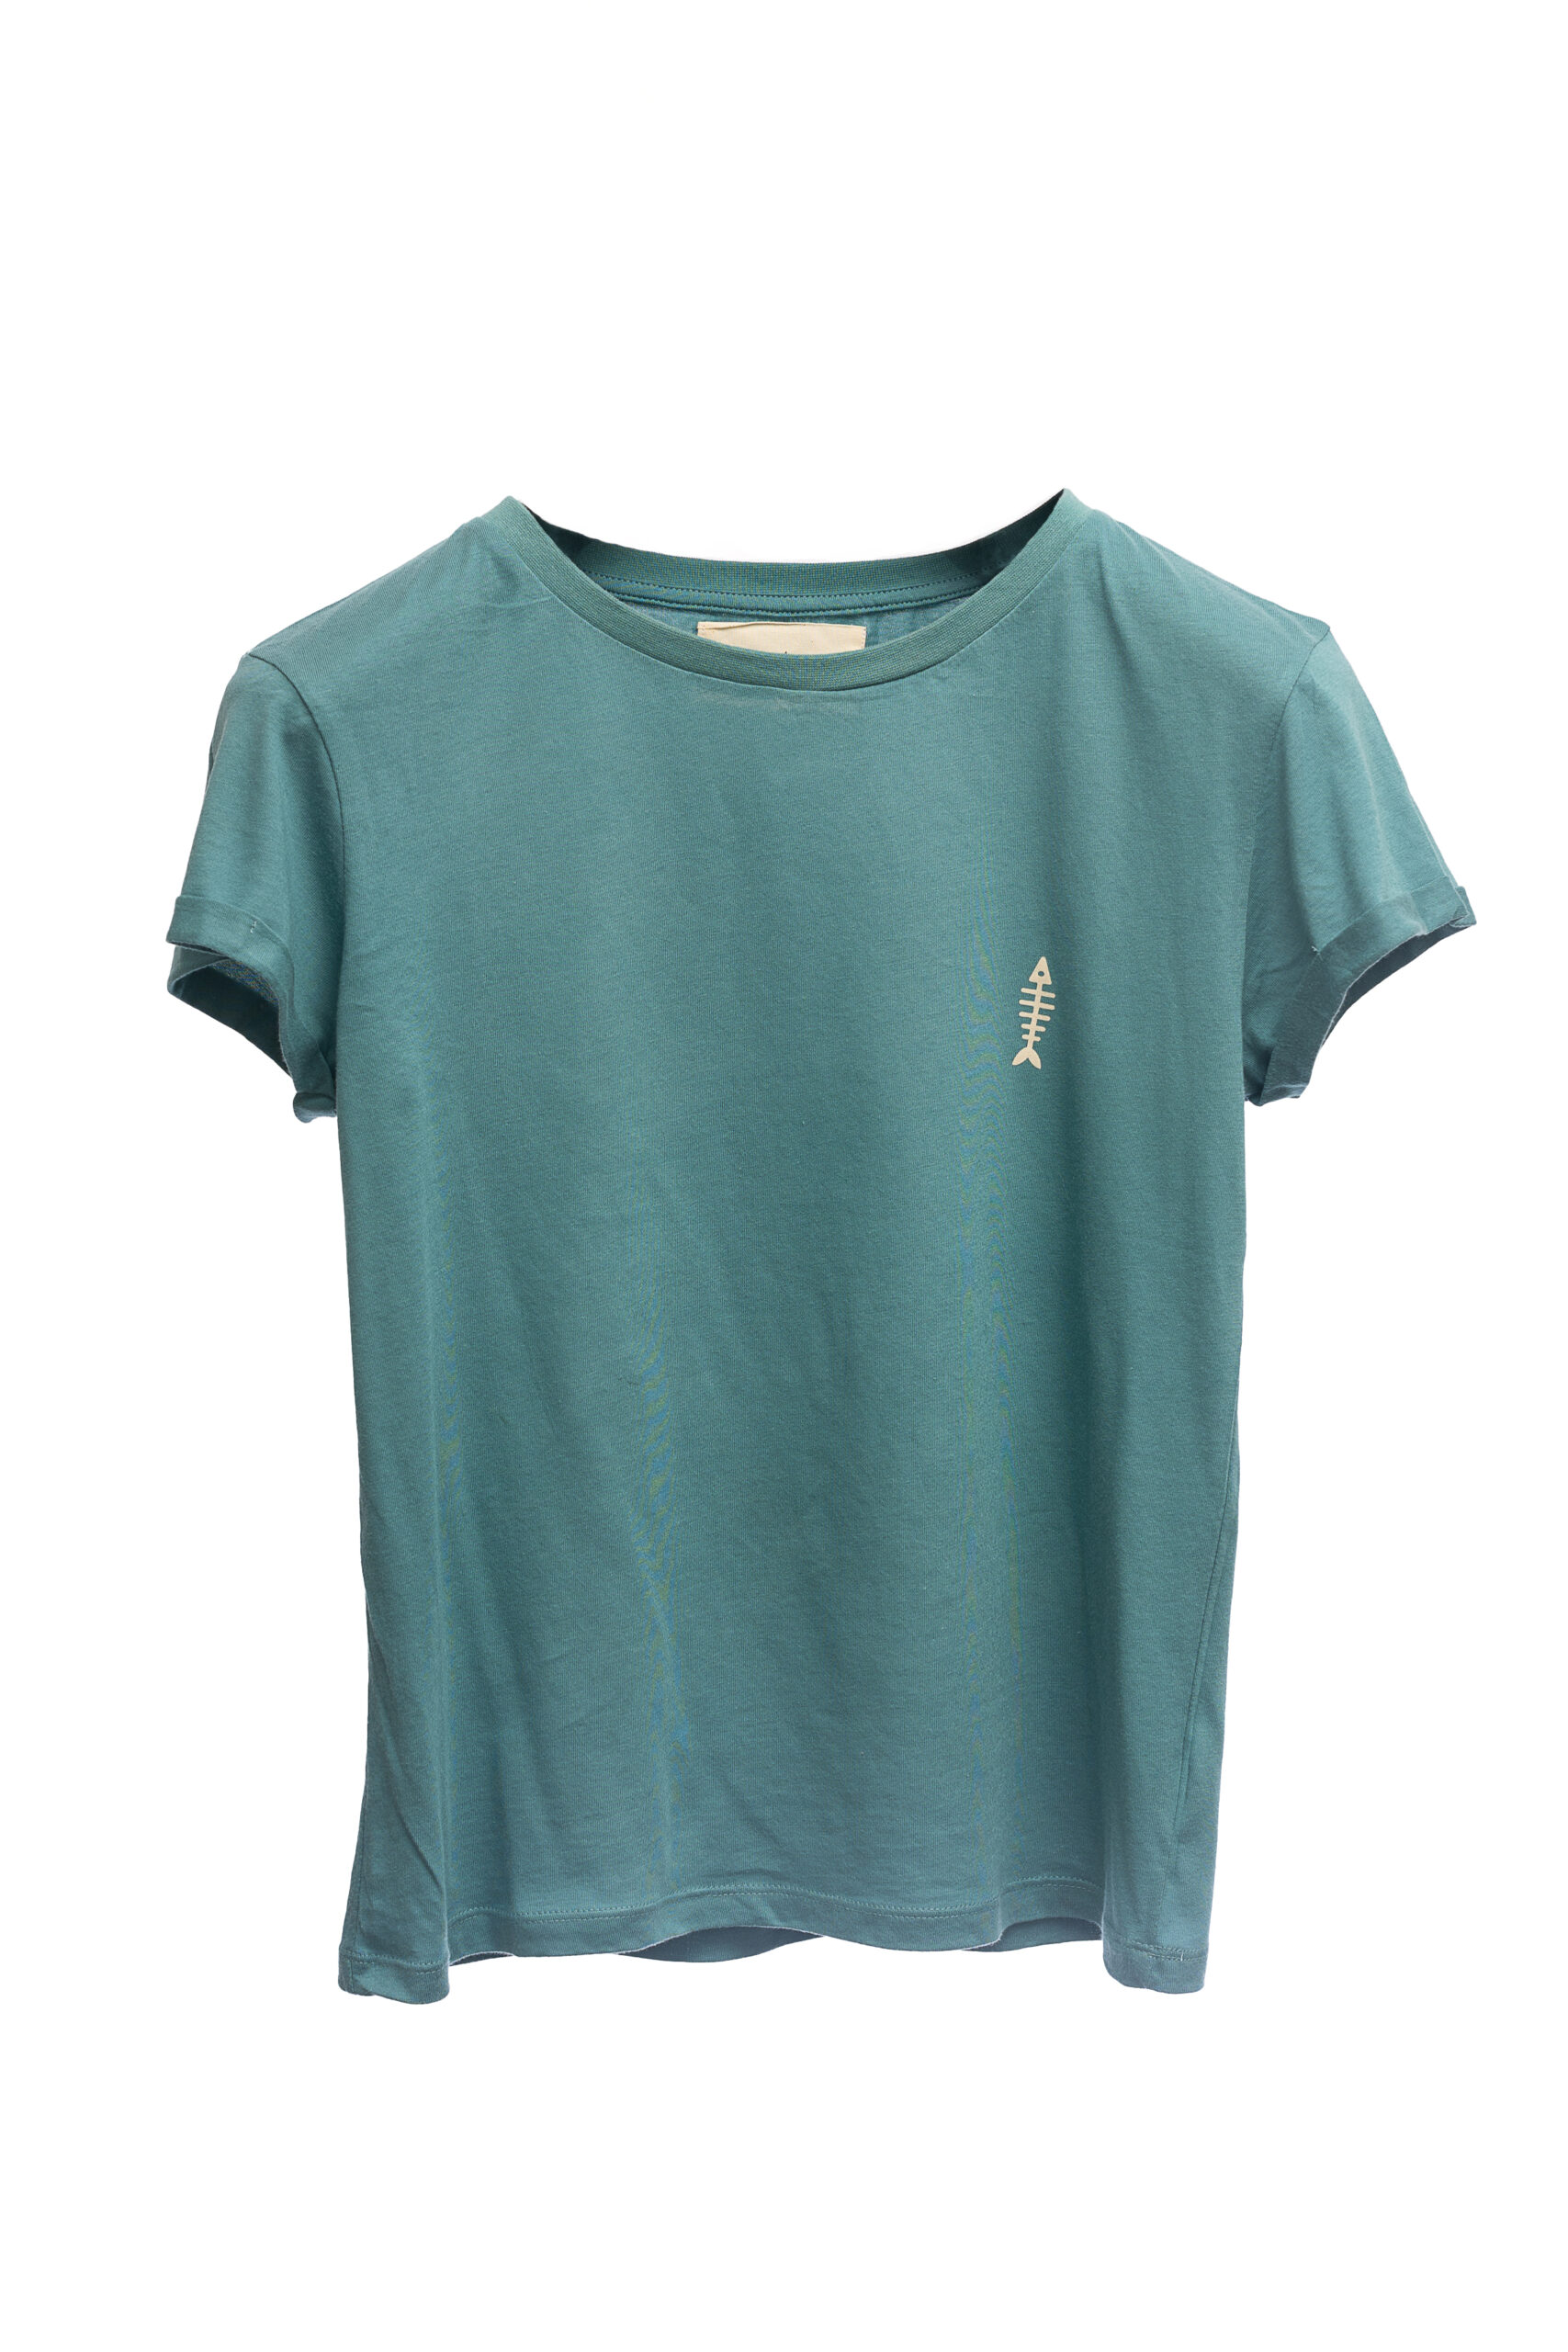 Camiseta Riquiña azul y verde niña - SomosOcéano